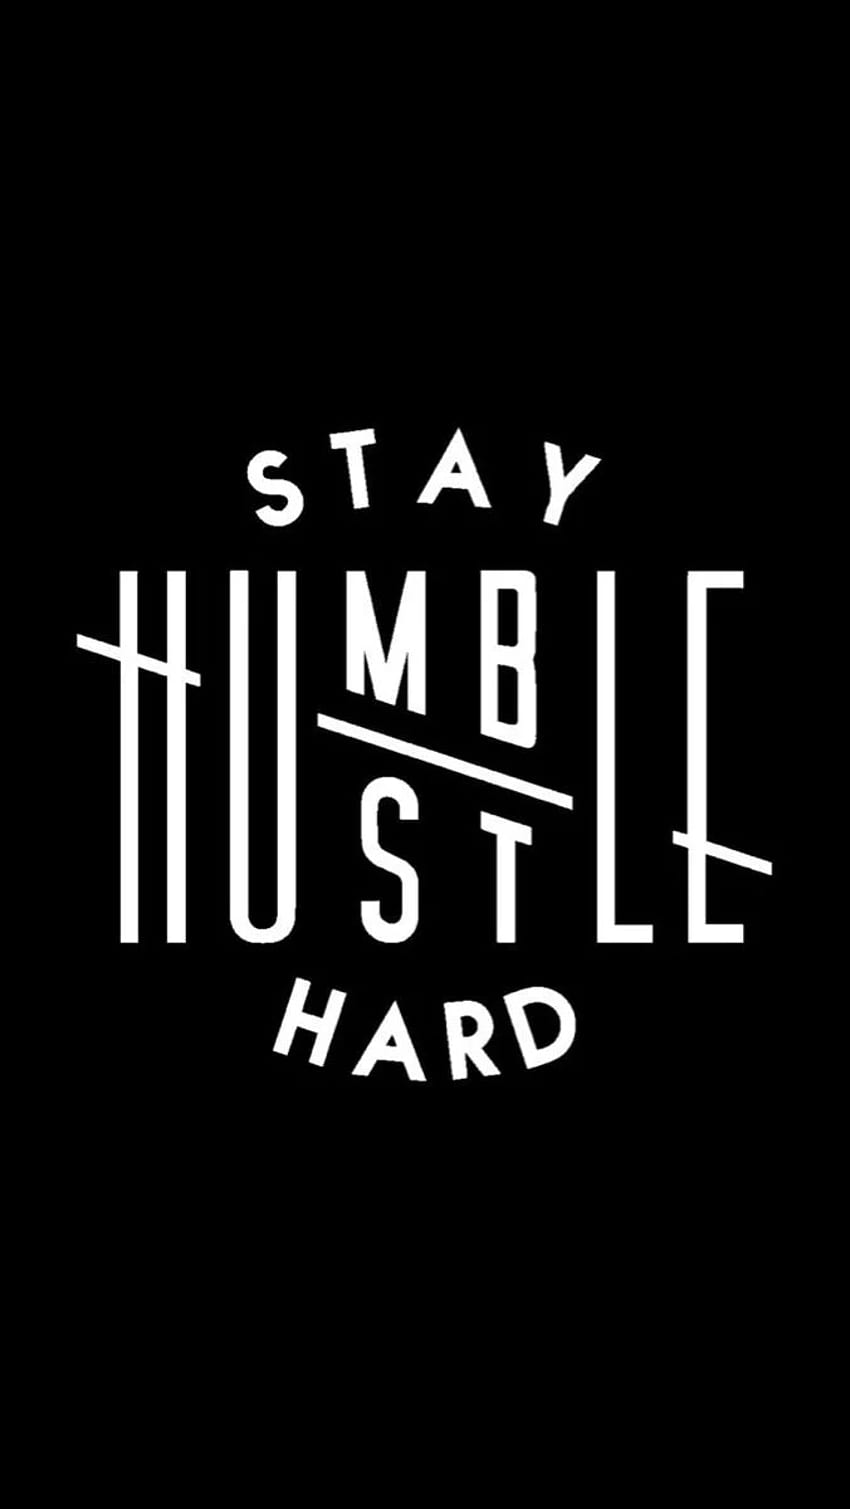 Ayuda a construir jóvenes emprendedores. Cotizaciones humildes, Manténgase humilde cotizaciones, Hustle citas, Manténgase humilde Hustle Hard fondo de pantalla del teléfono